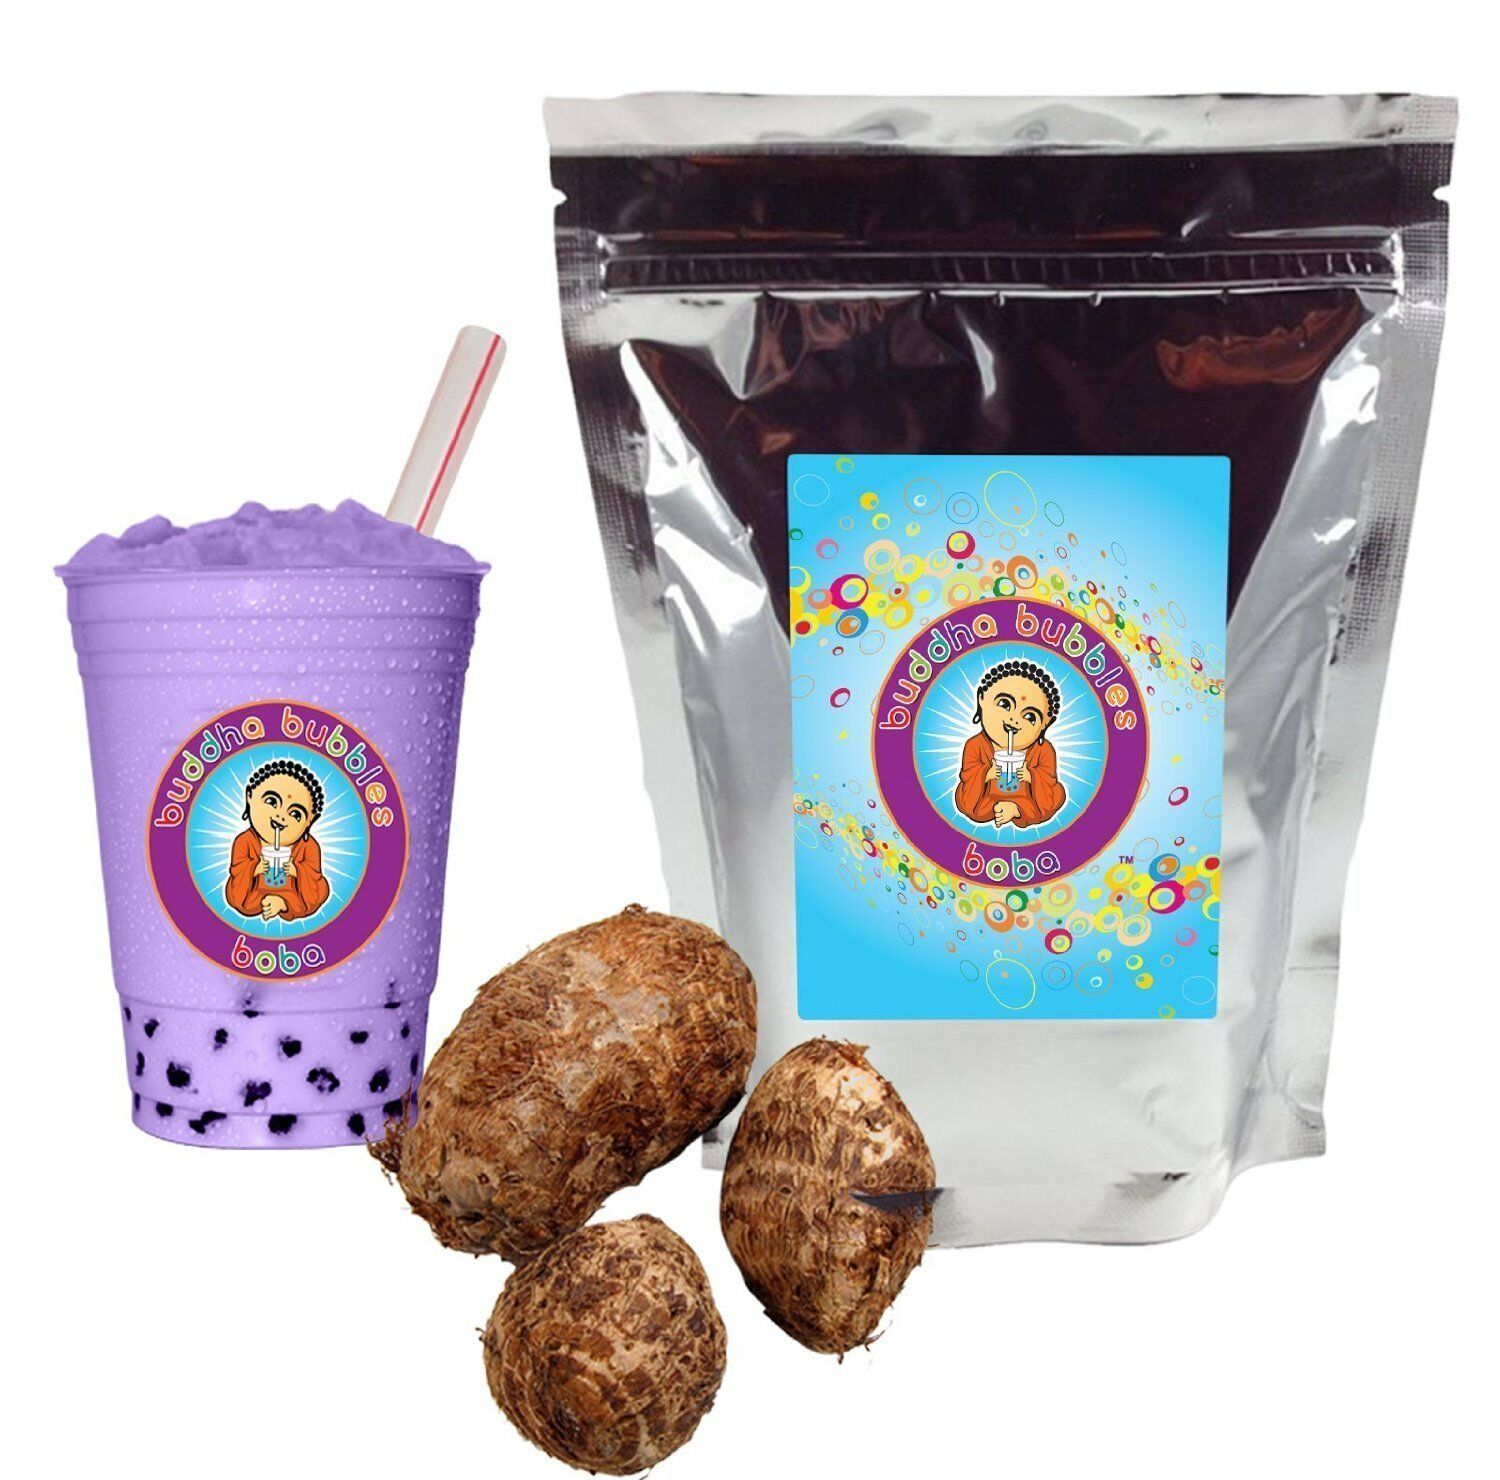 Taro Drink Mix Boba / Bubble Tea Powder By Buddha Bubbles Boba (10 Ounces)